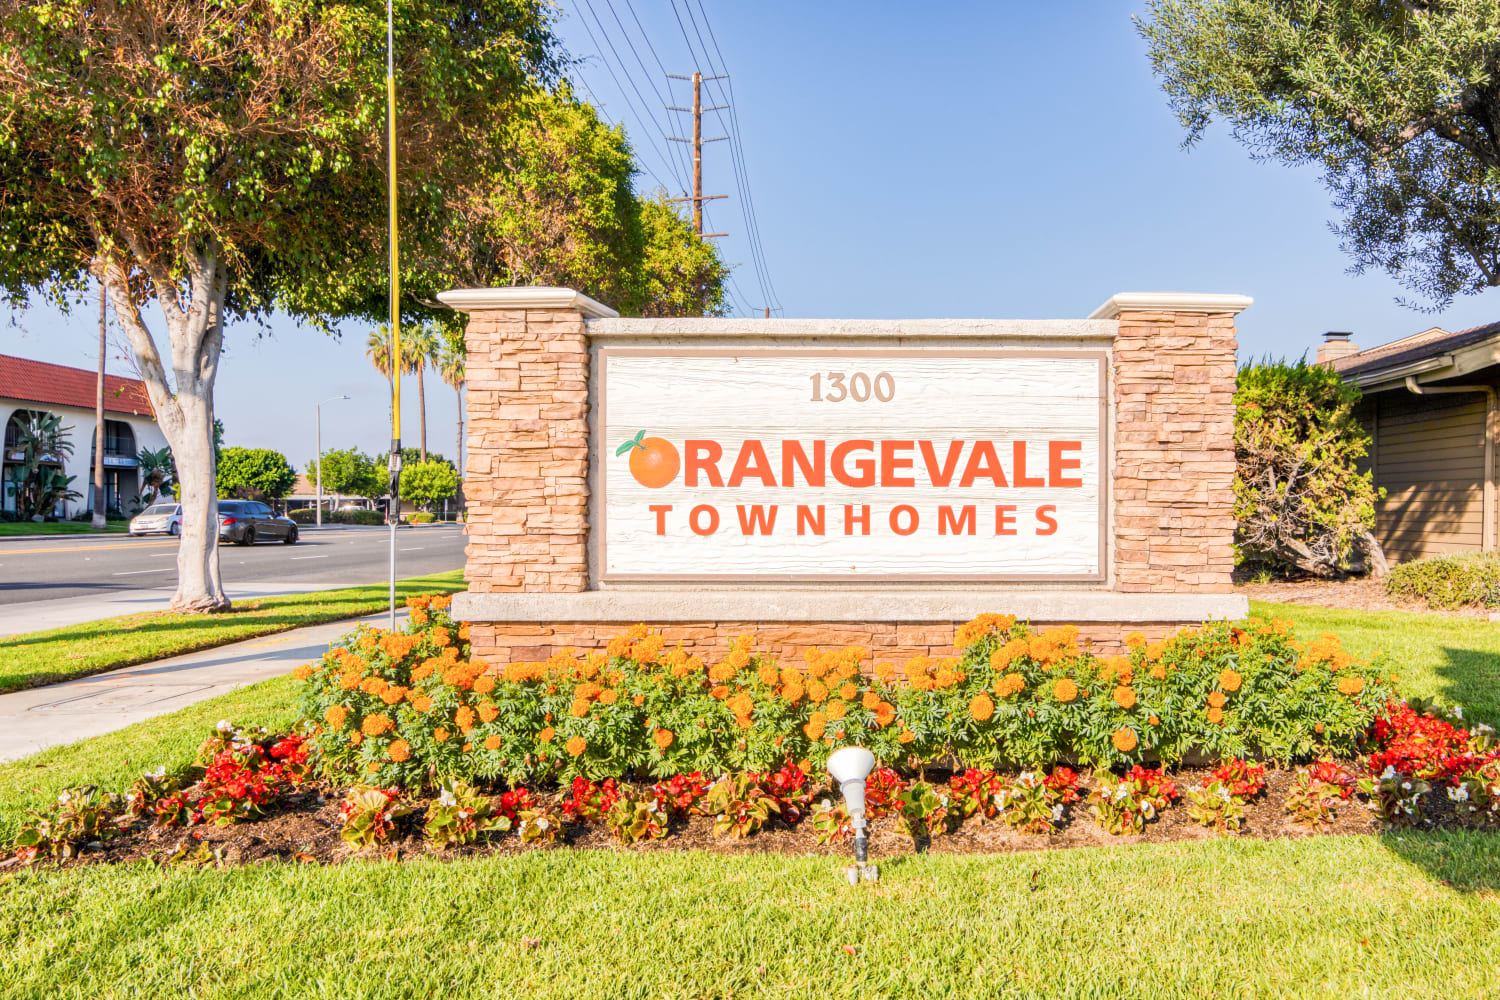 Orangevale Townhomes apartment homes in Orange, California